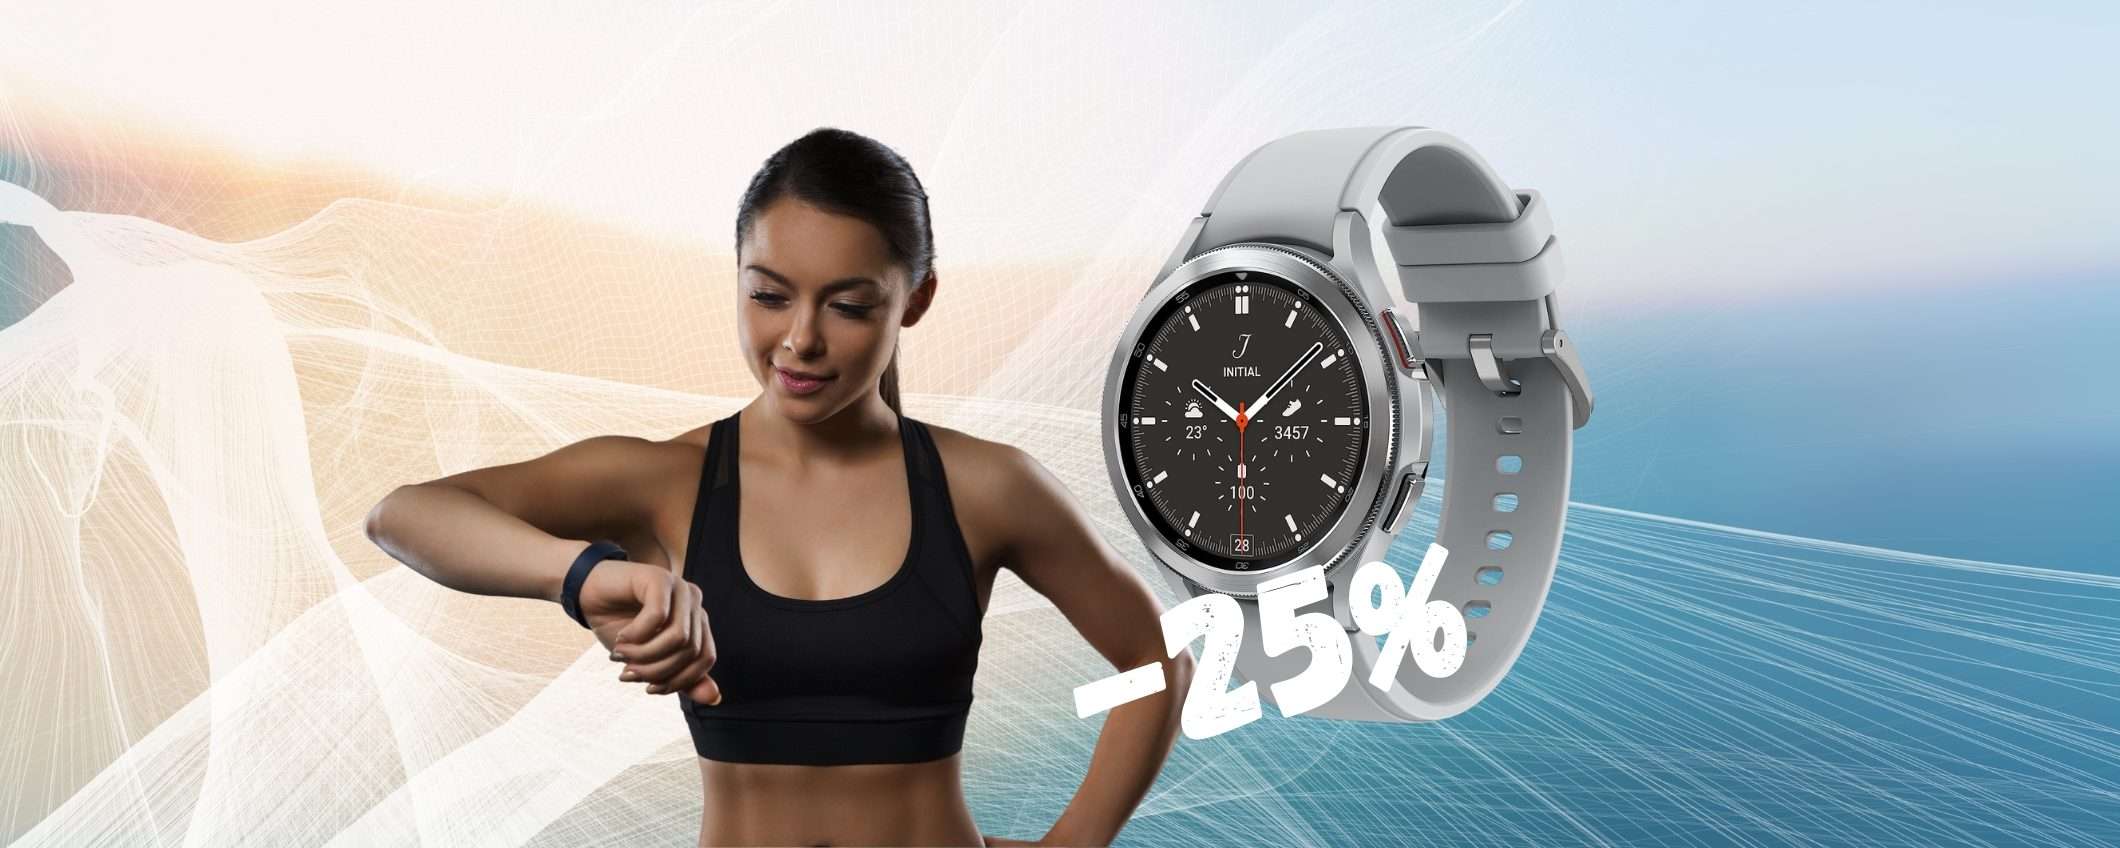 SAMSUNG Galaxy Watch 4 a un PREZZO mai VISTO su Amazon